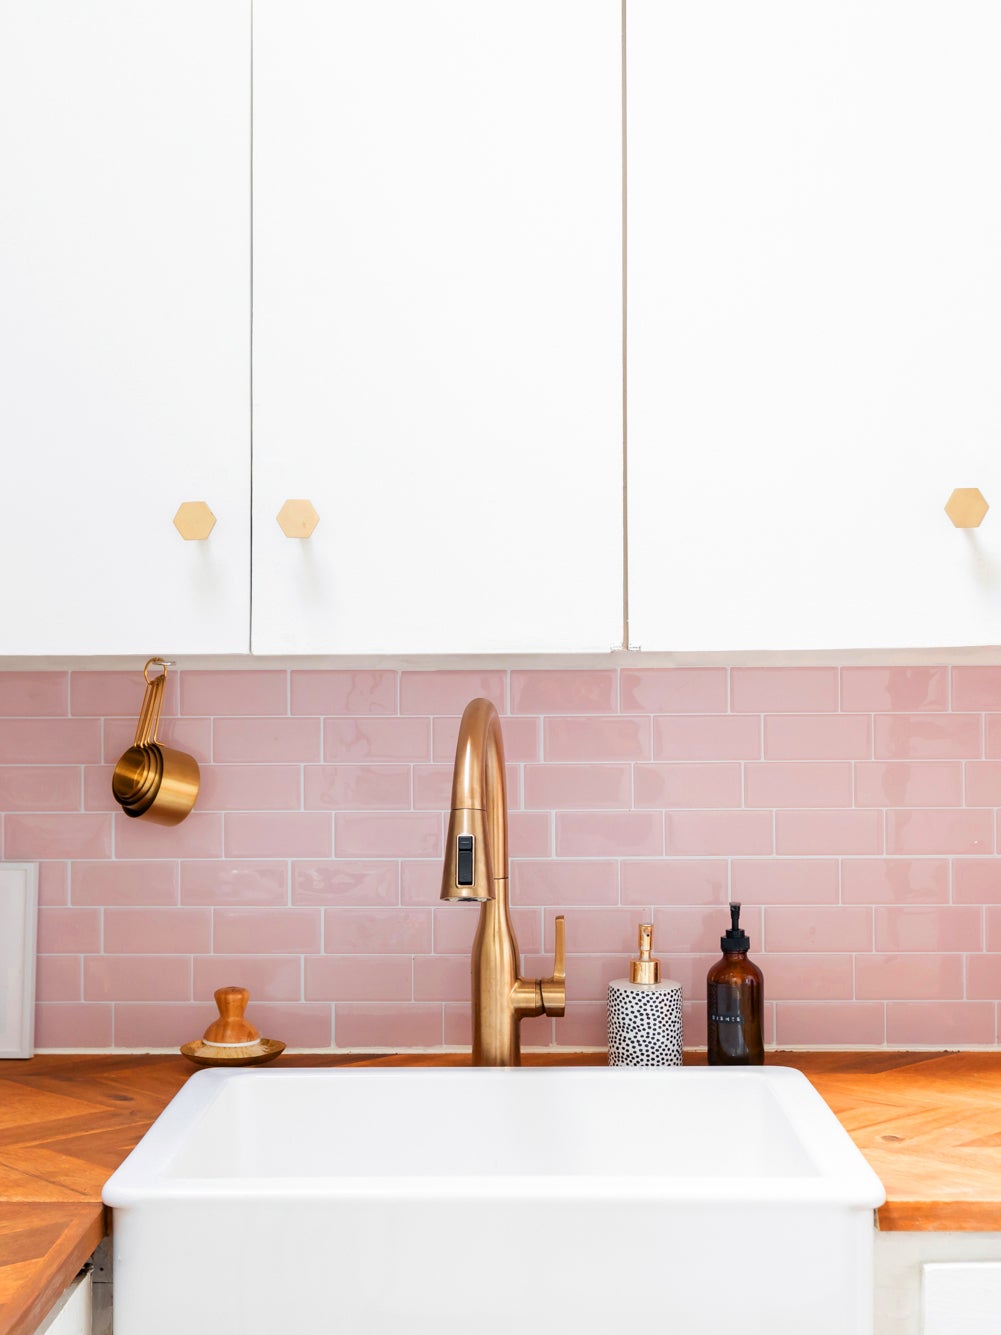 white kitchen cabinets with shiny pihnk subway tile backsplash